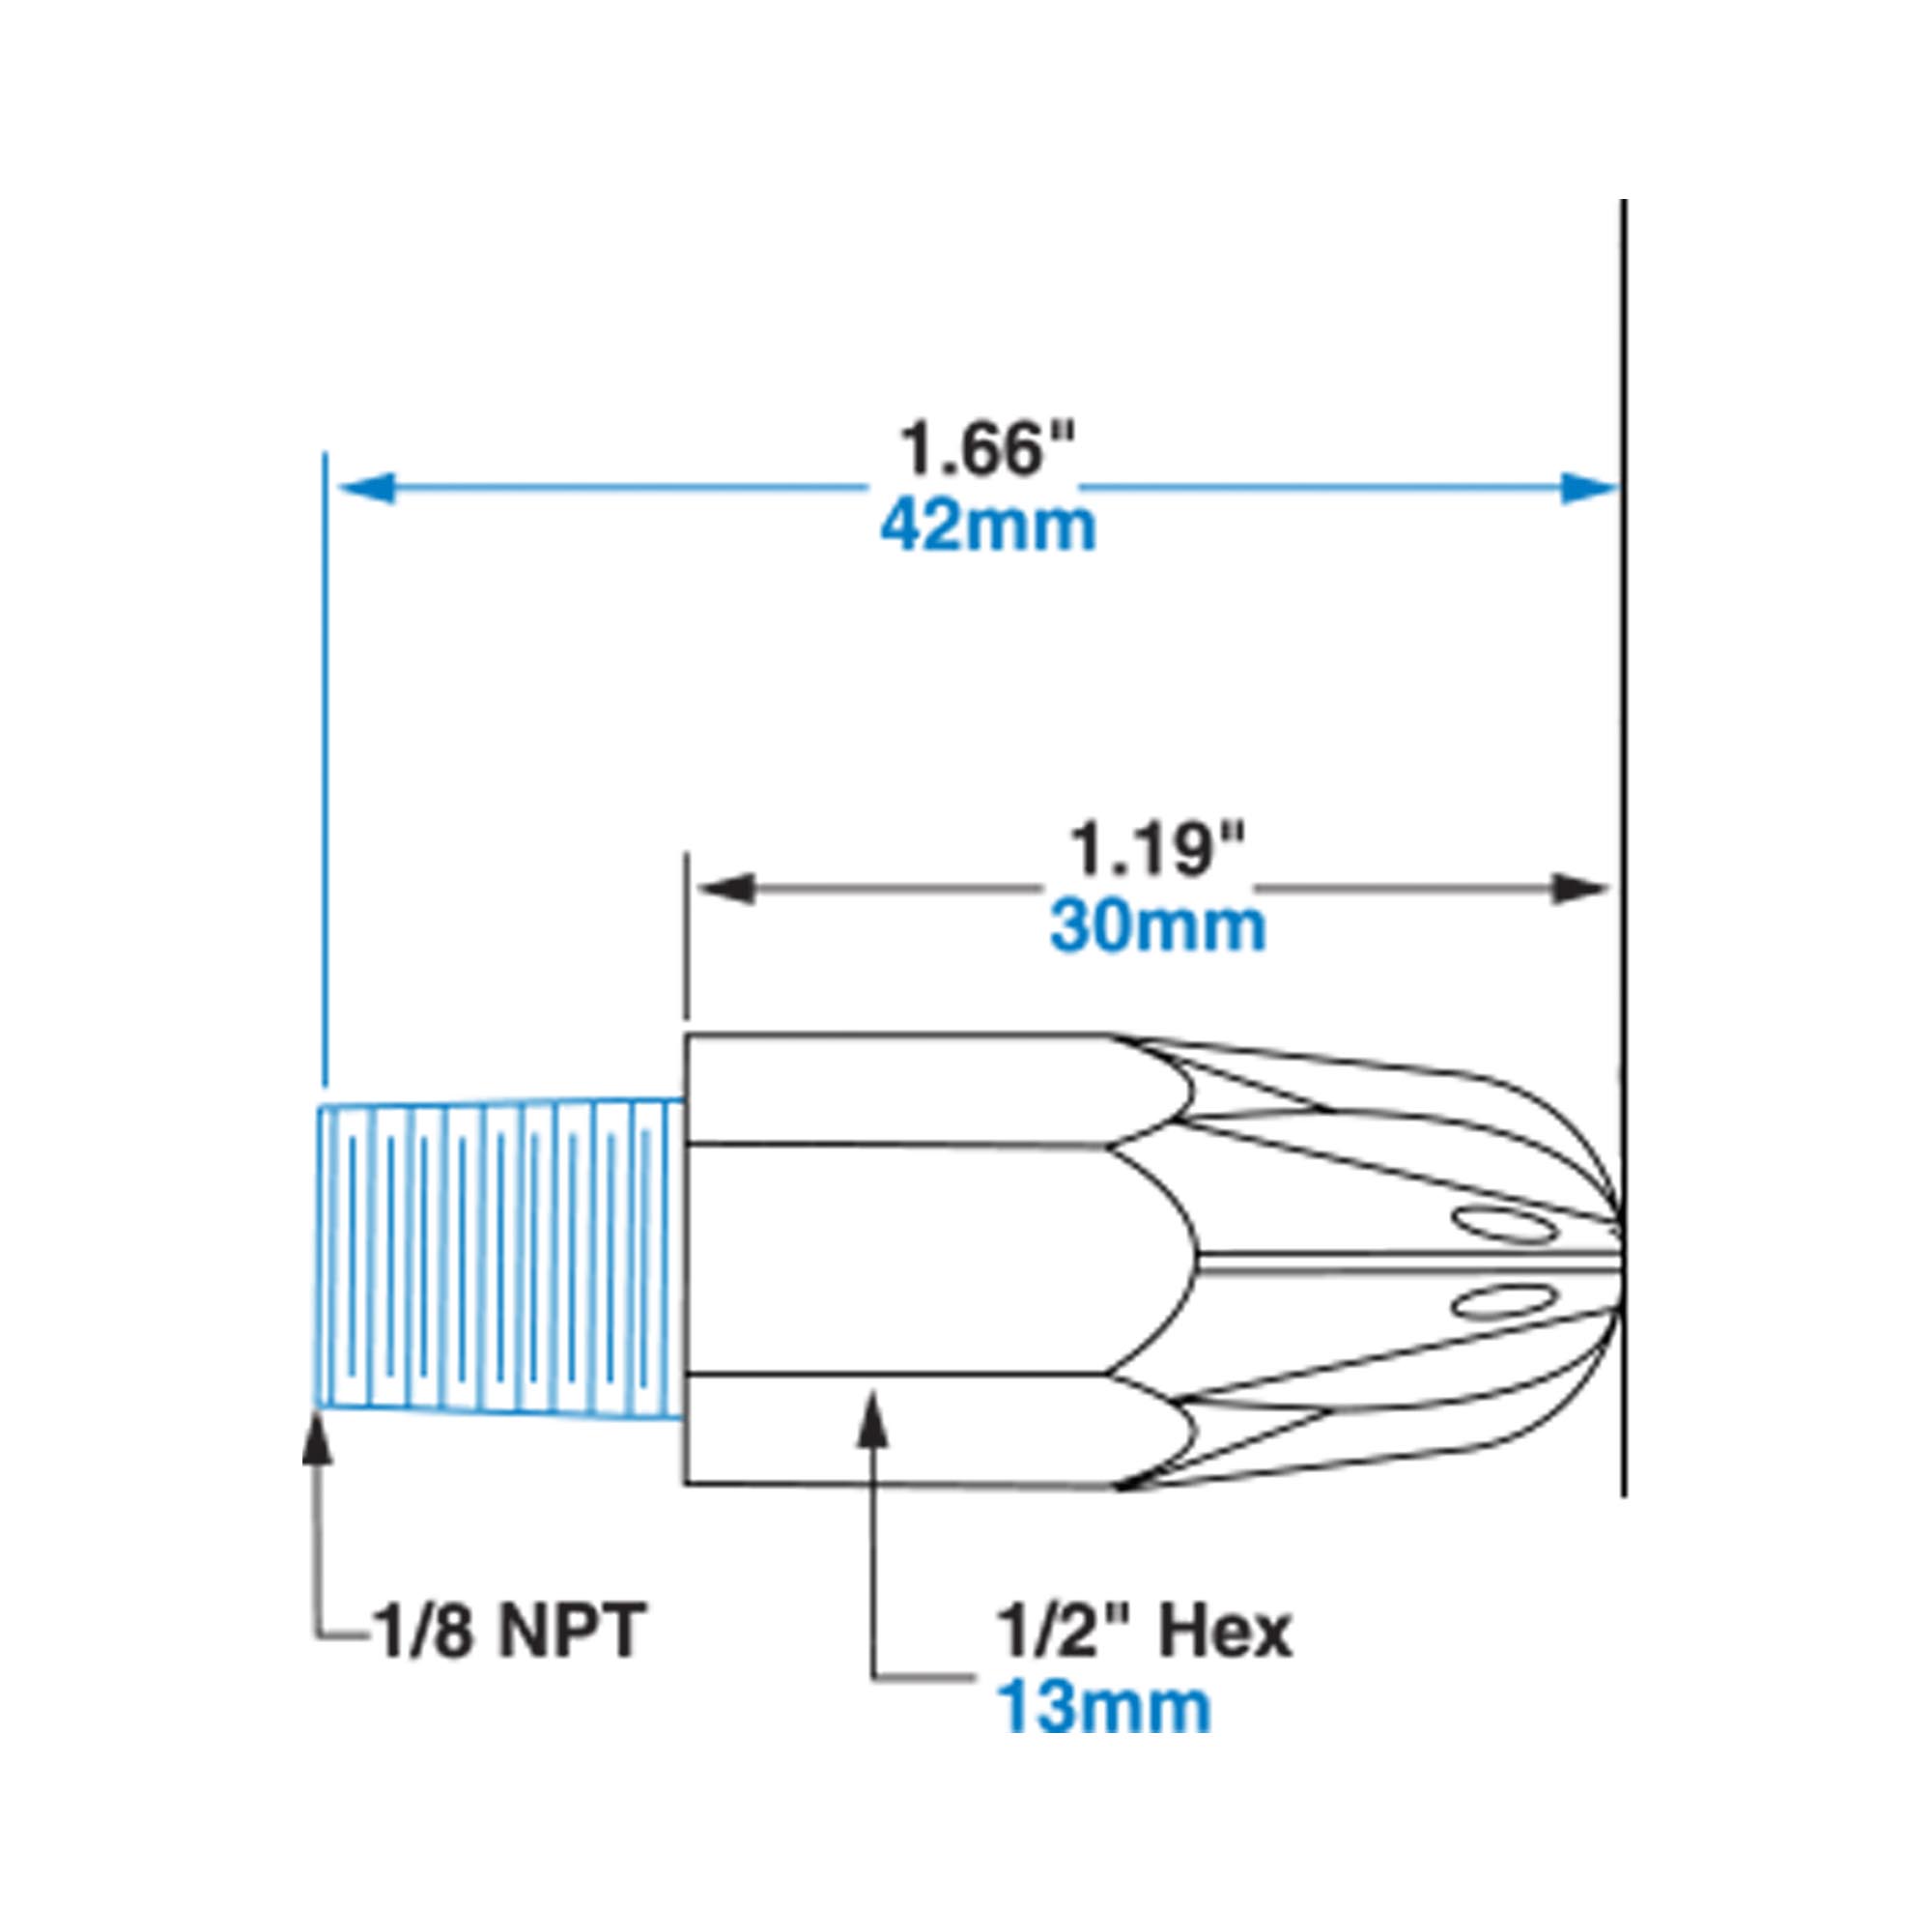 EXAIR Mini Super Air Nozzle Dimensions